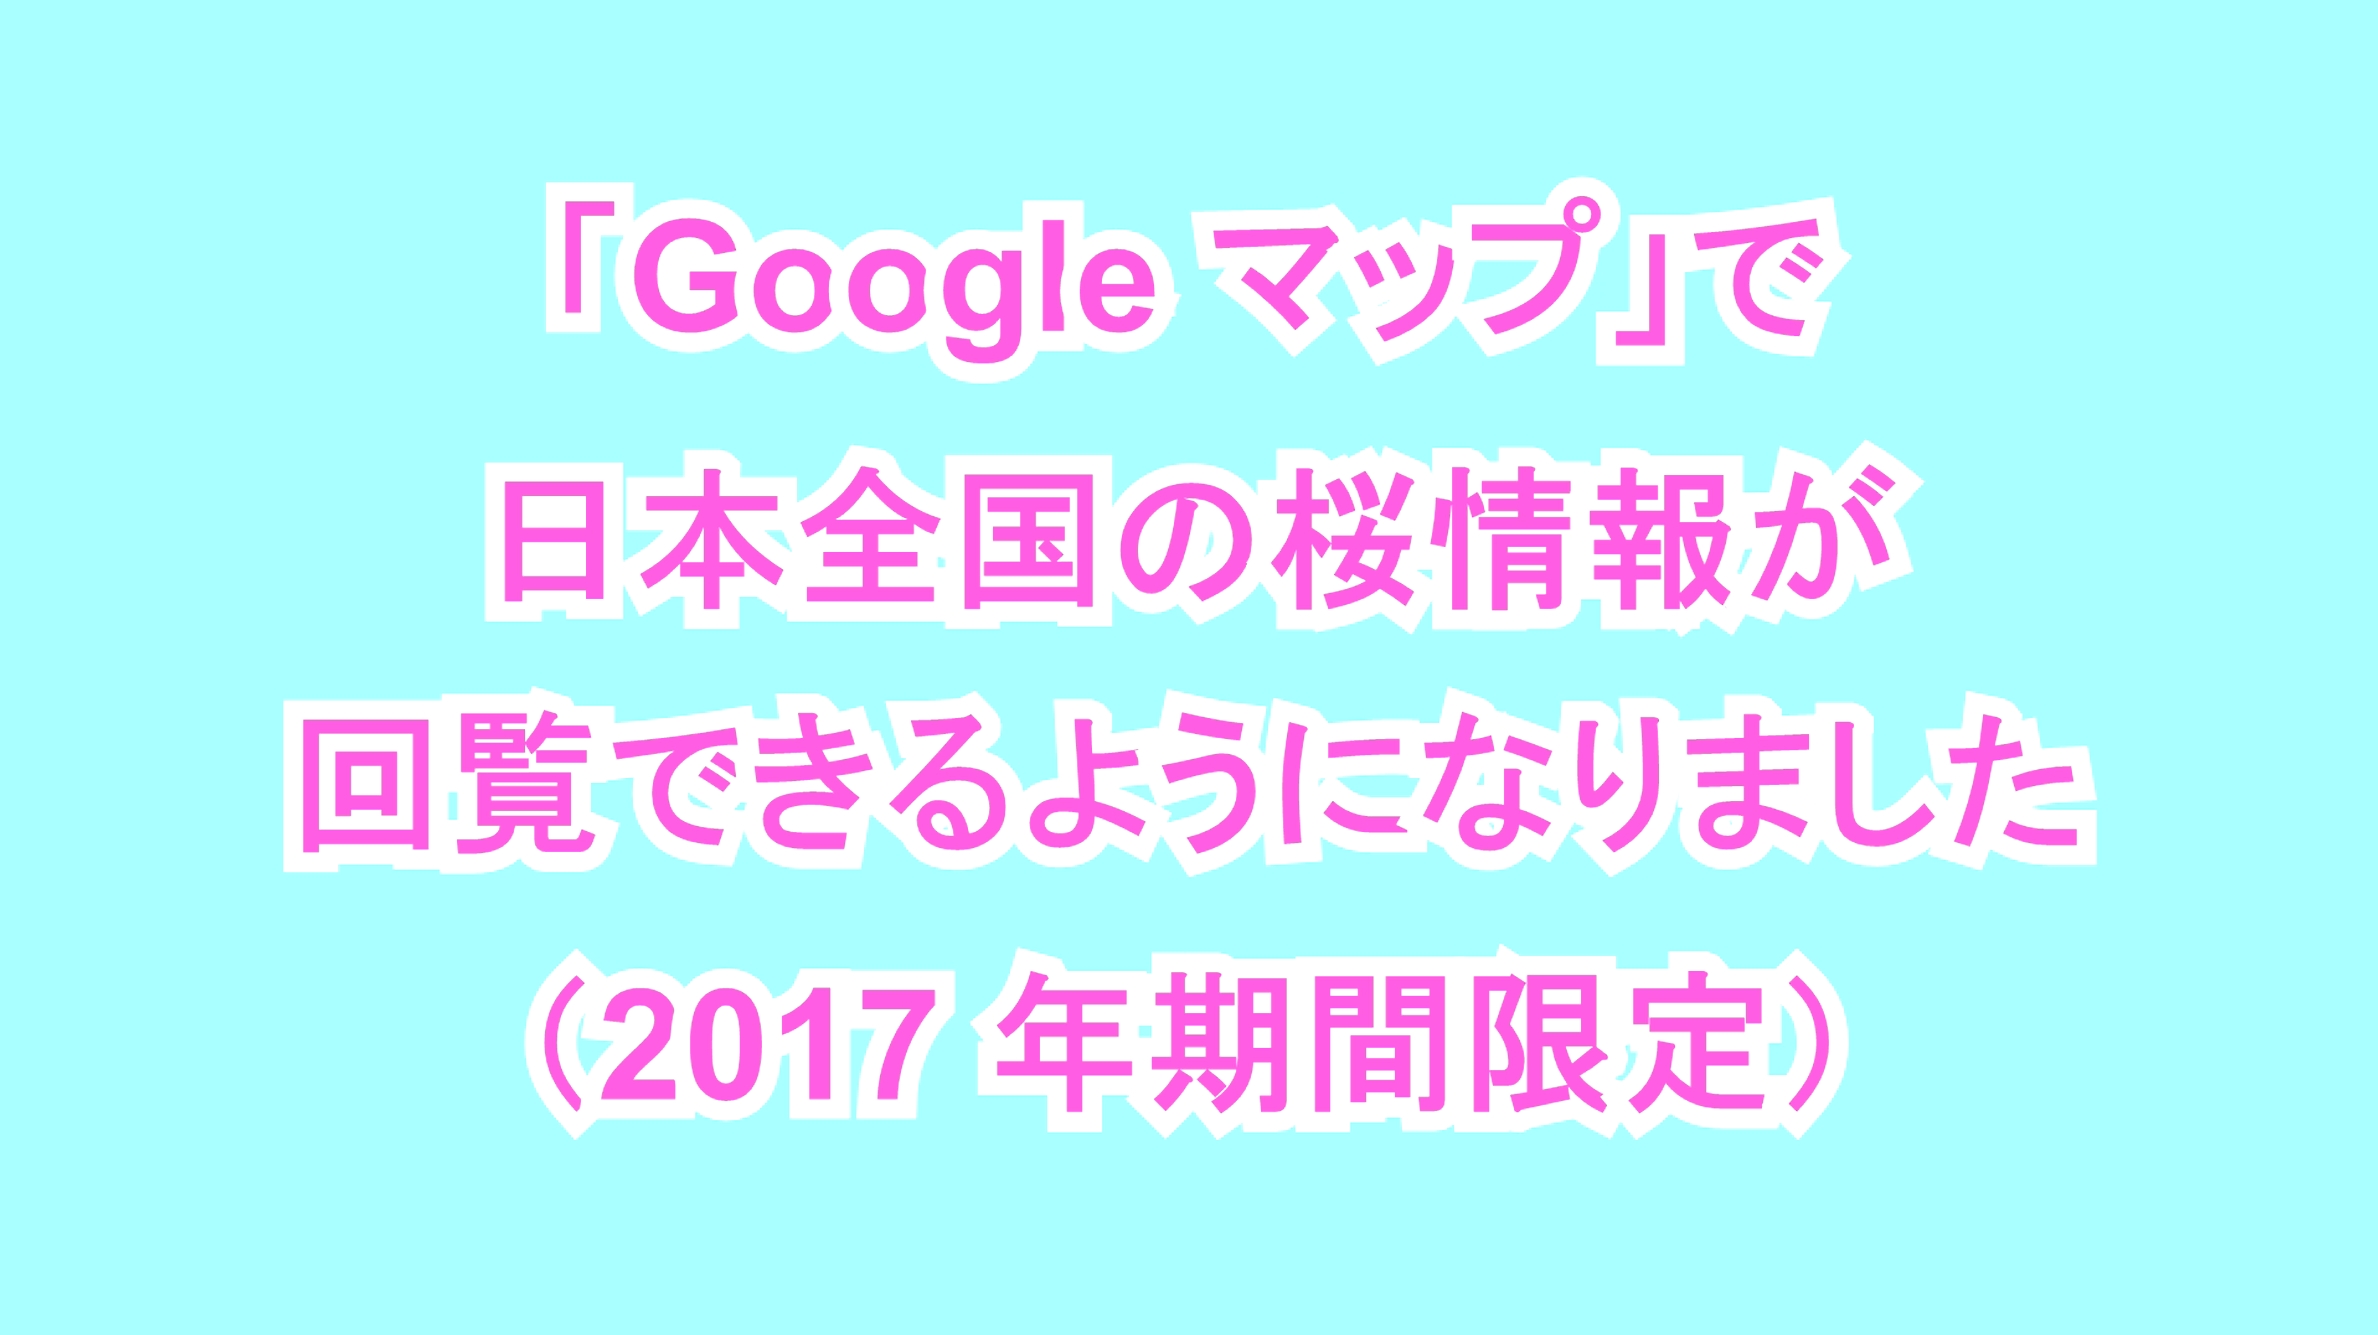 「Google マップ」で日本全国の桜情報が回覧できるようになりました（2017年期間限定）